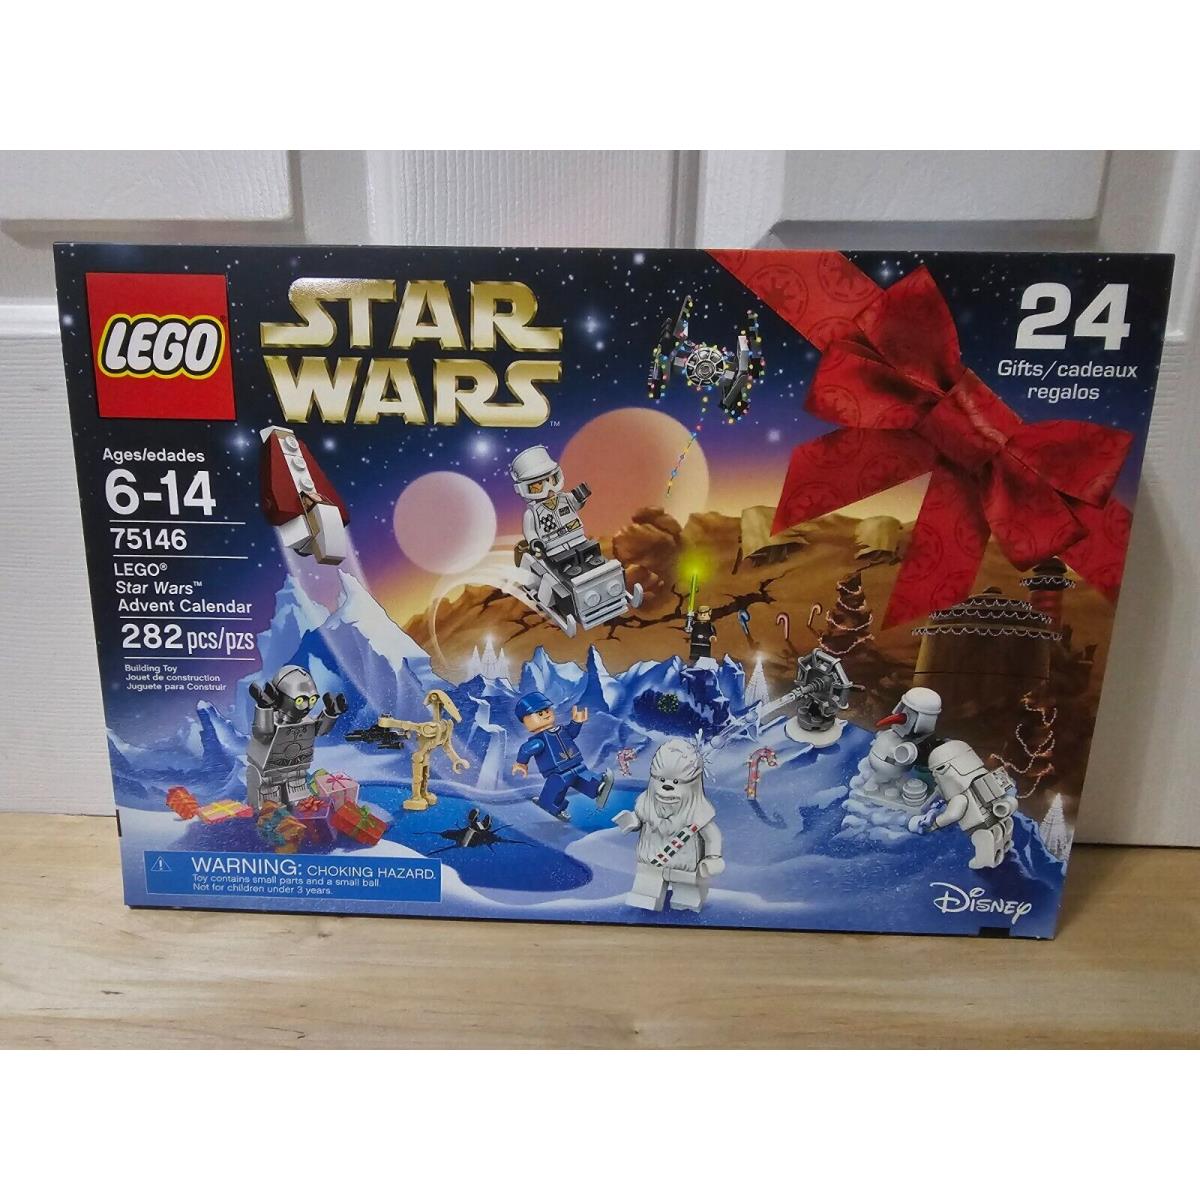 Lego Star Wars Advent Calendar 2016 - 75146